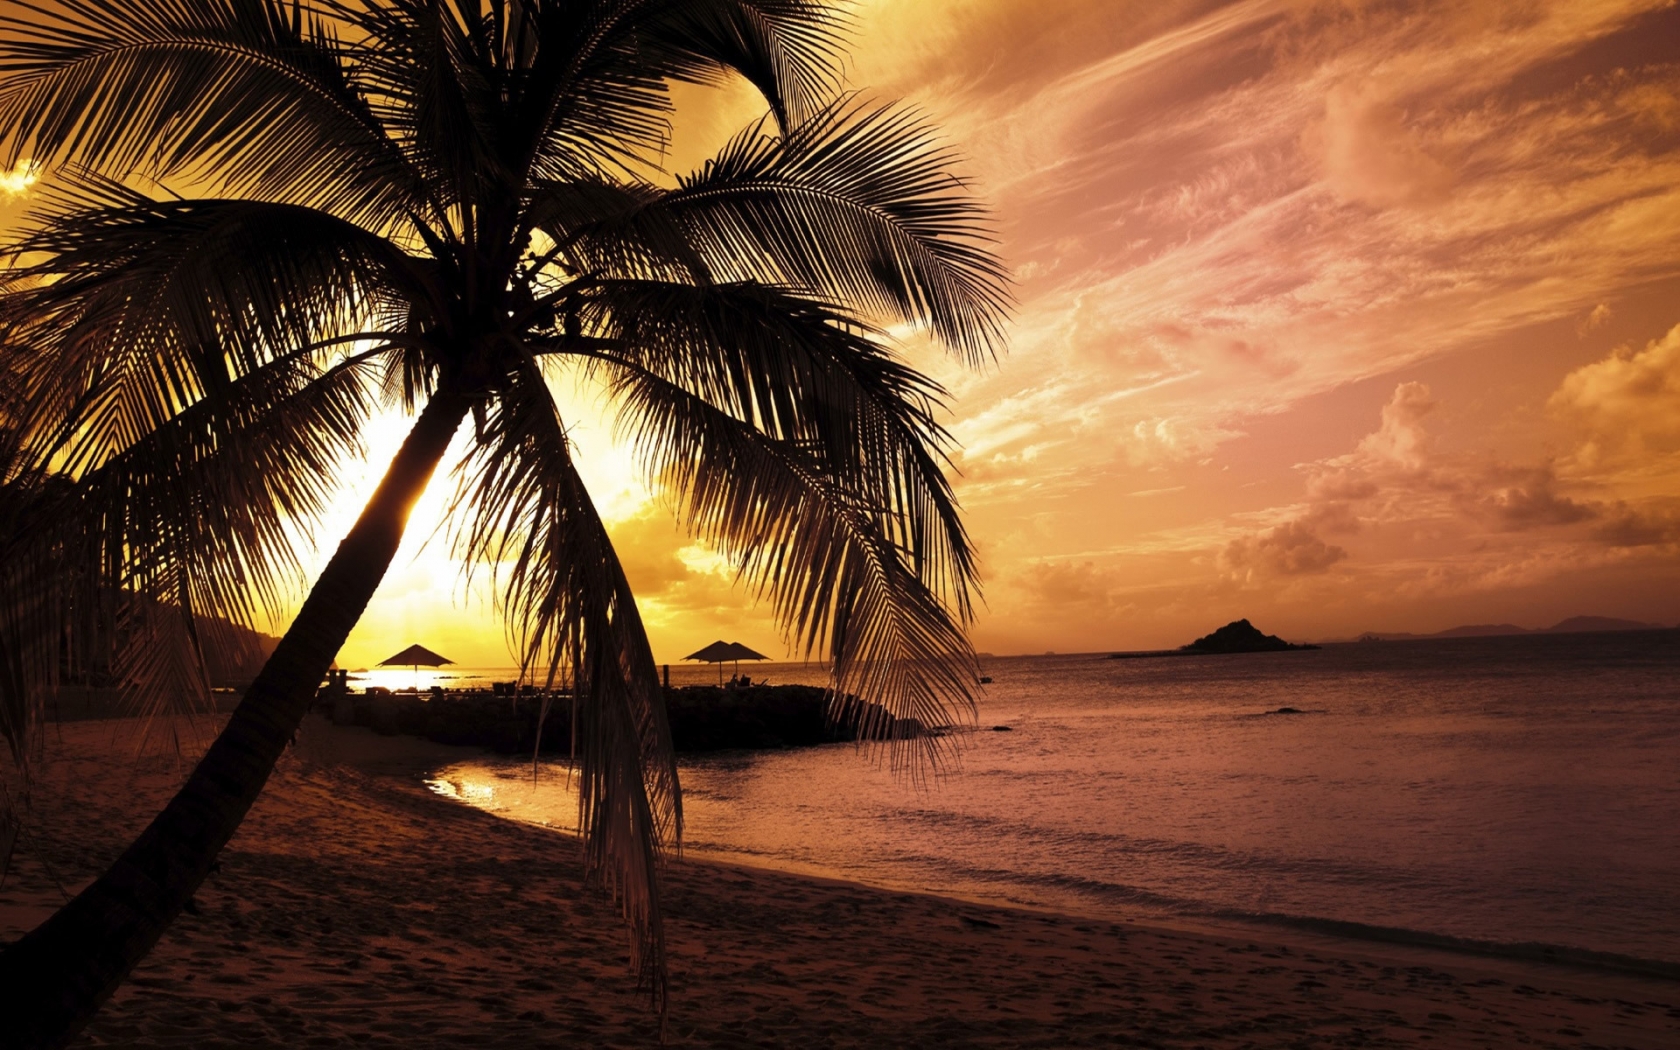 Beach Sunset for 1680 x 1050 widescreen resolution